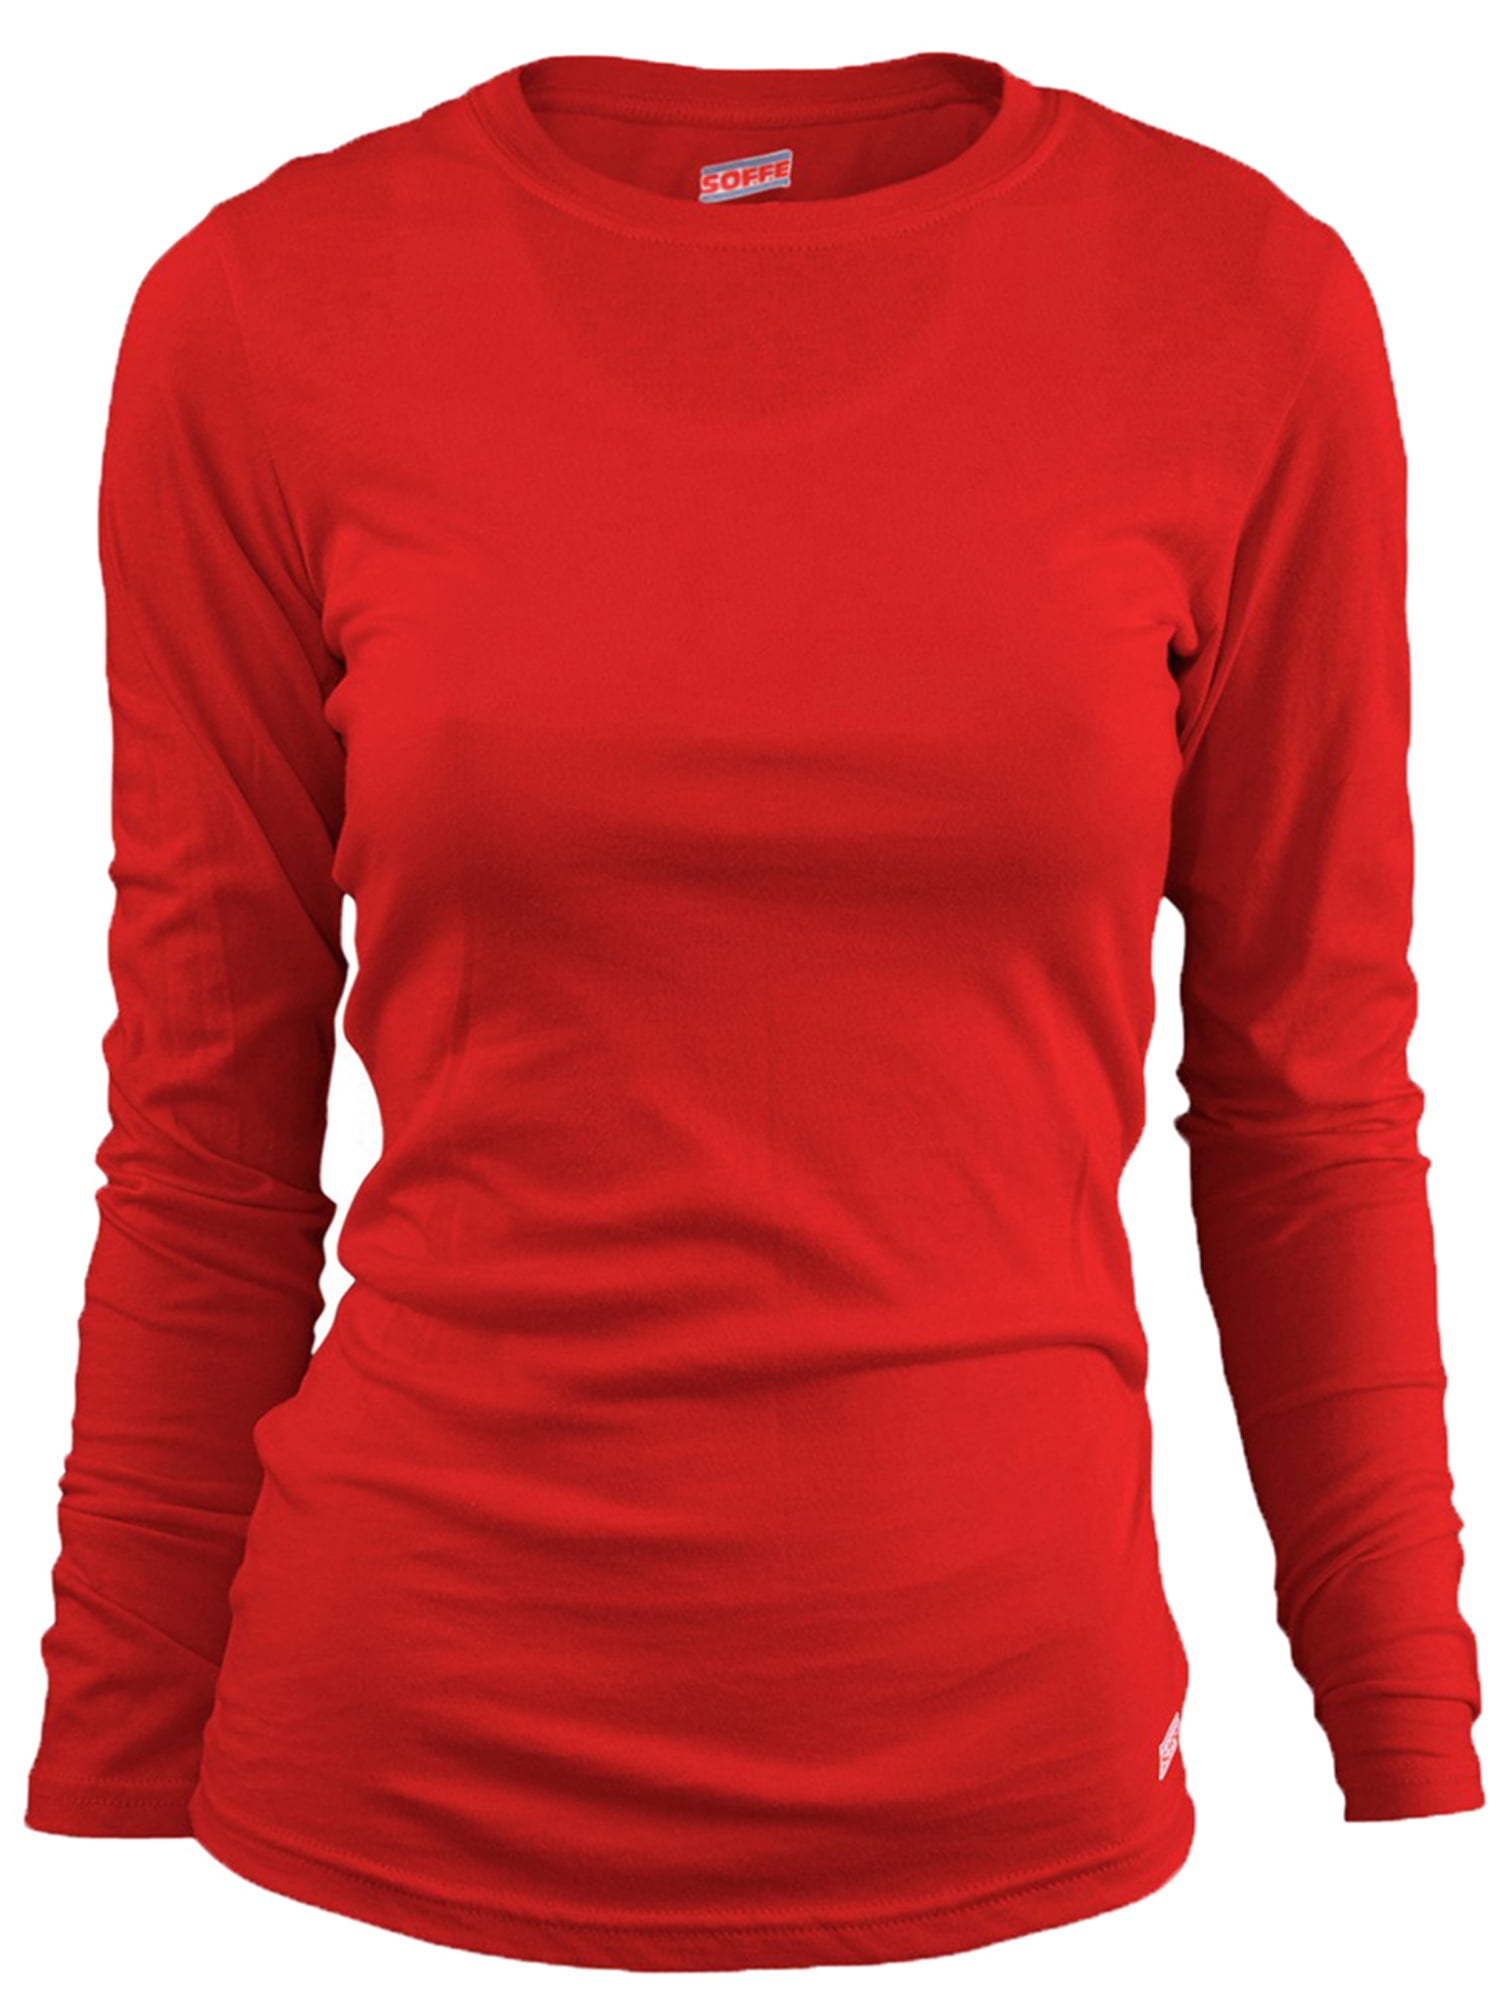 Long Sleeve T-Shirt, Texas Orange, Large, Style, 227V - Walmart.com